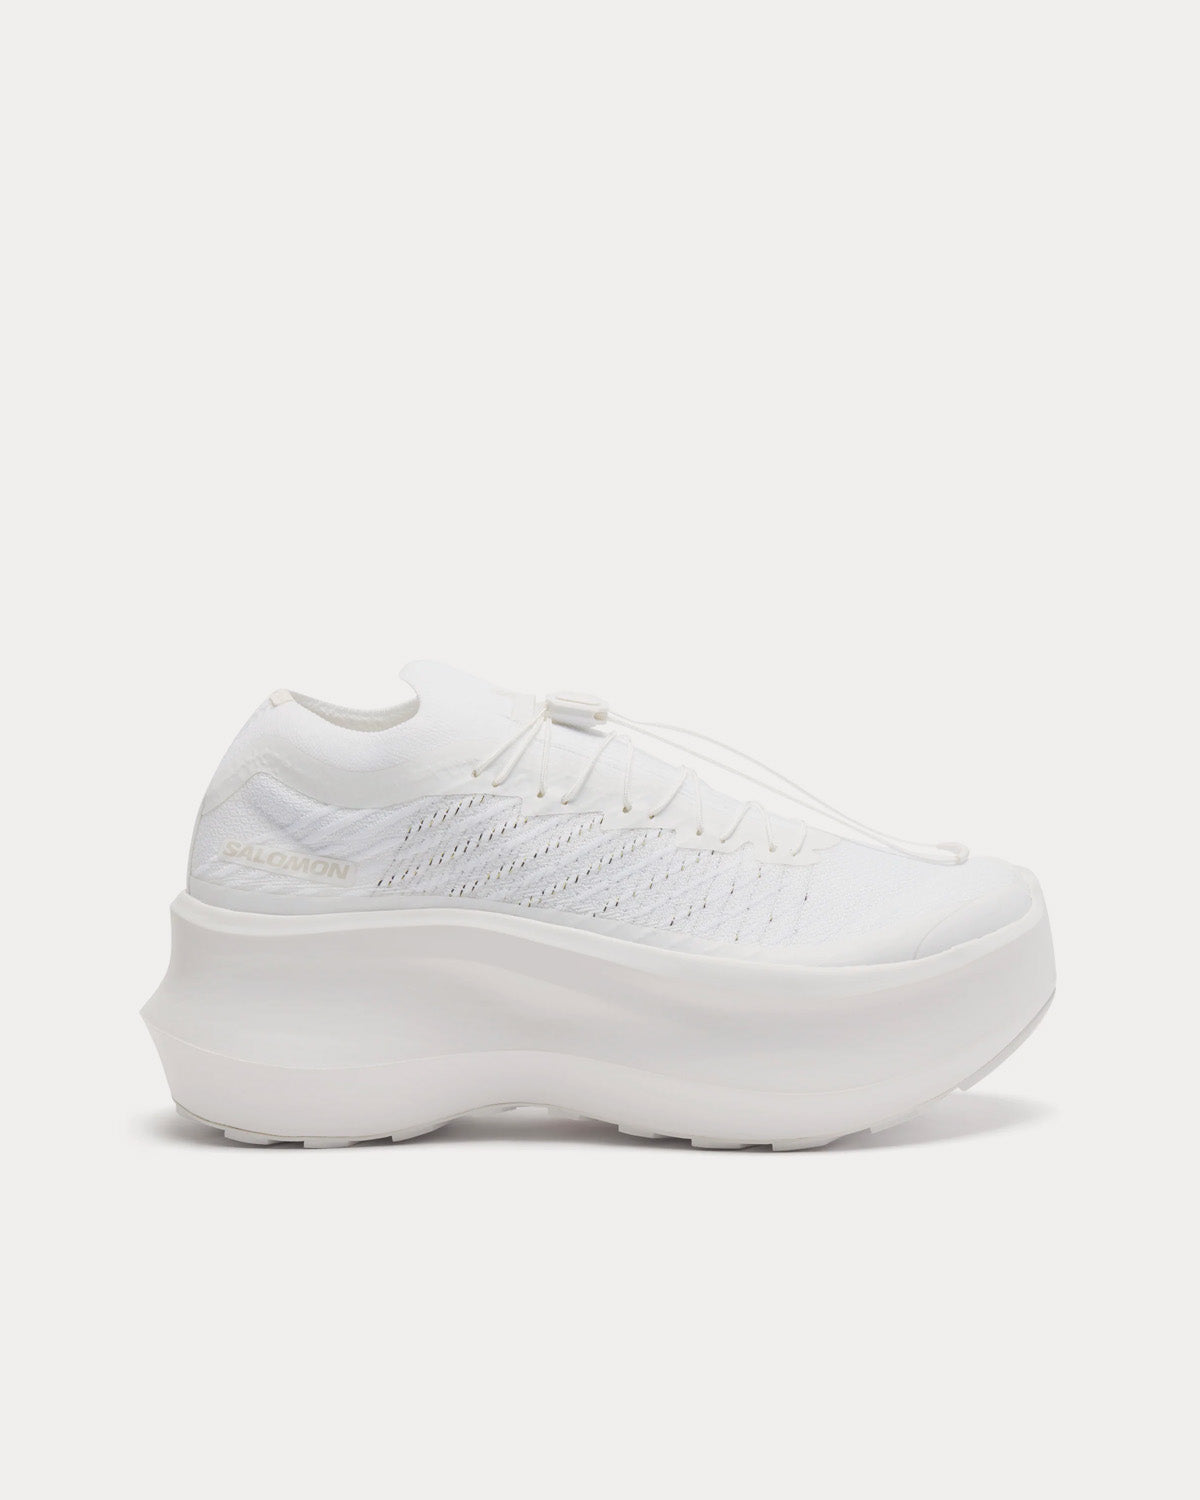 Salomon x Comme des Garçons - Pulsar Platform White Low Top Sneakers